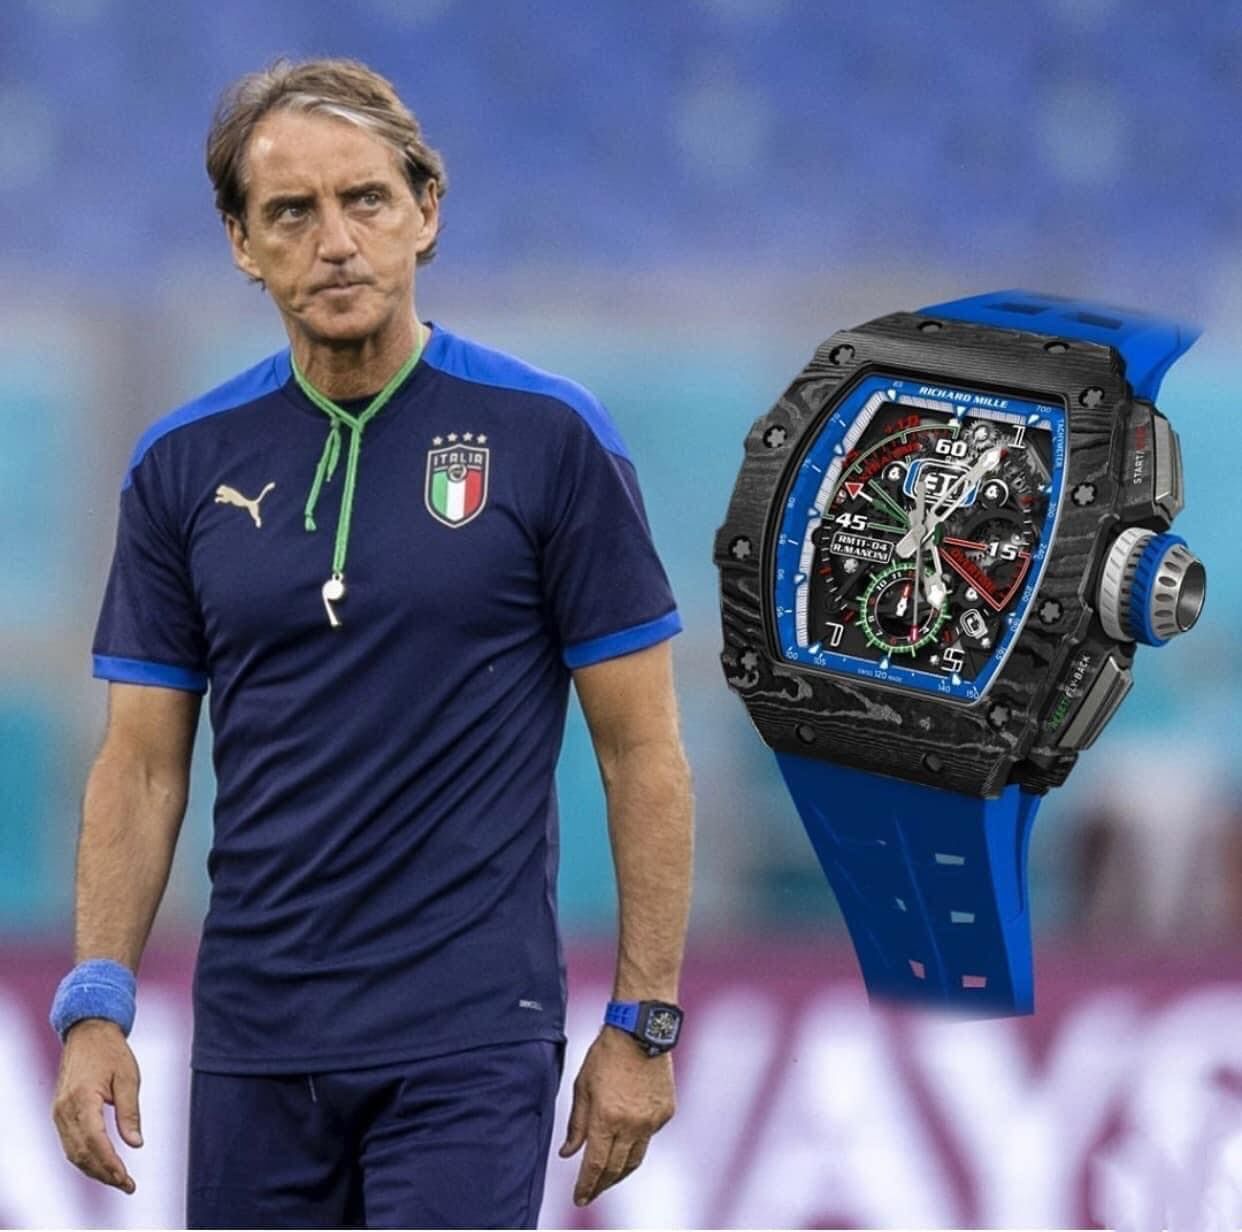 Bóc giá chiếc đồng hồ mang tên HLV trưởng tuyển Italia Roberto Mancini-2